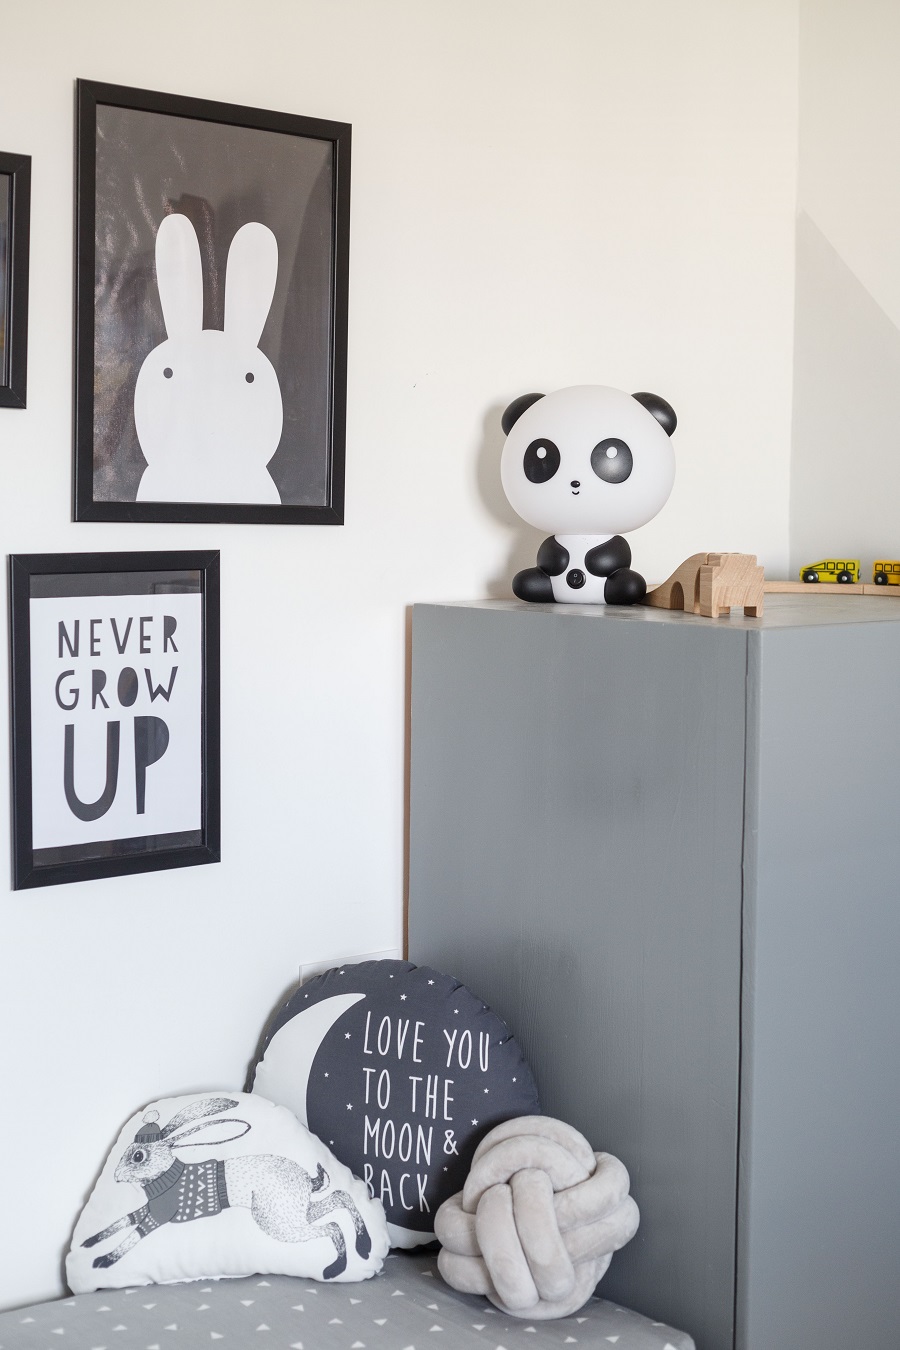 חדר תינוק עיצוב לימור אורן צילום אורית ארנון